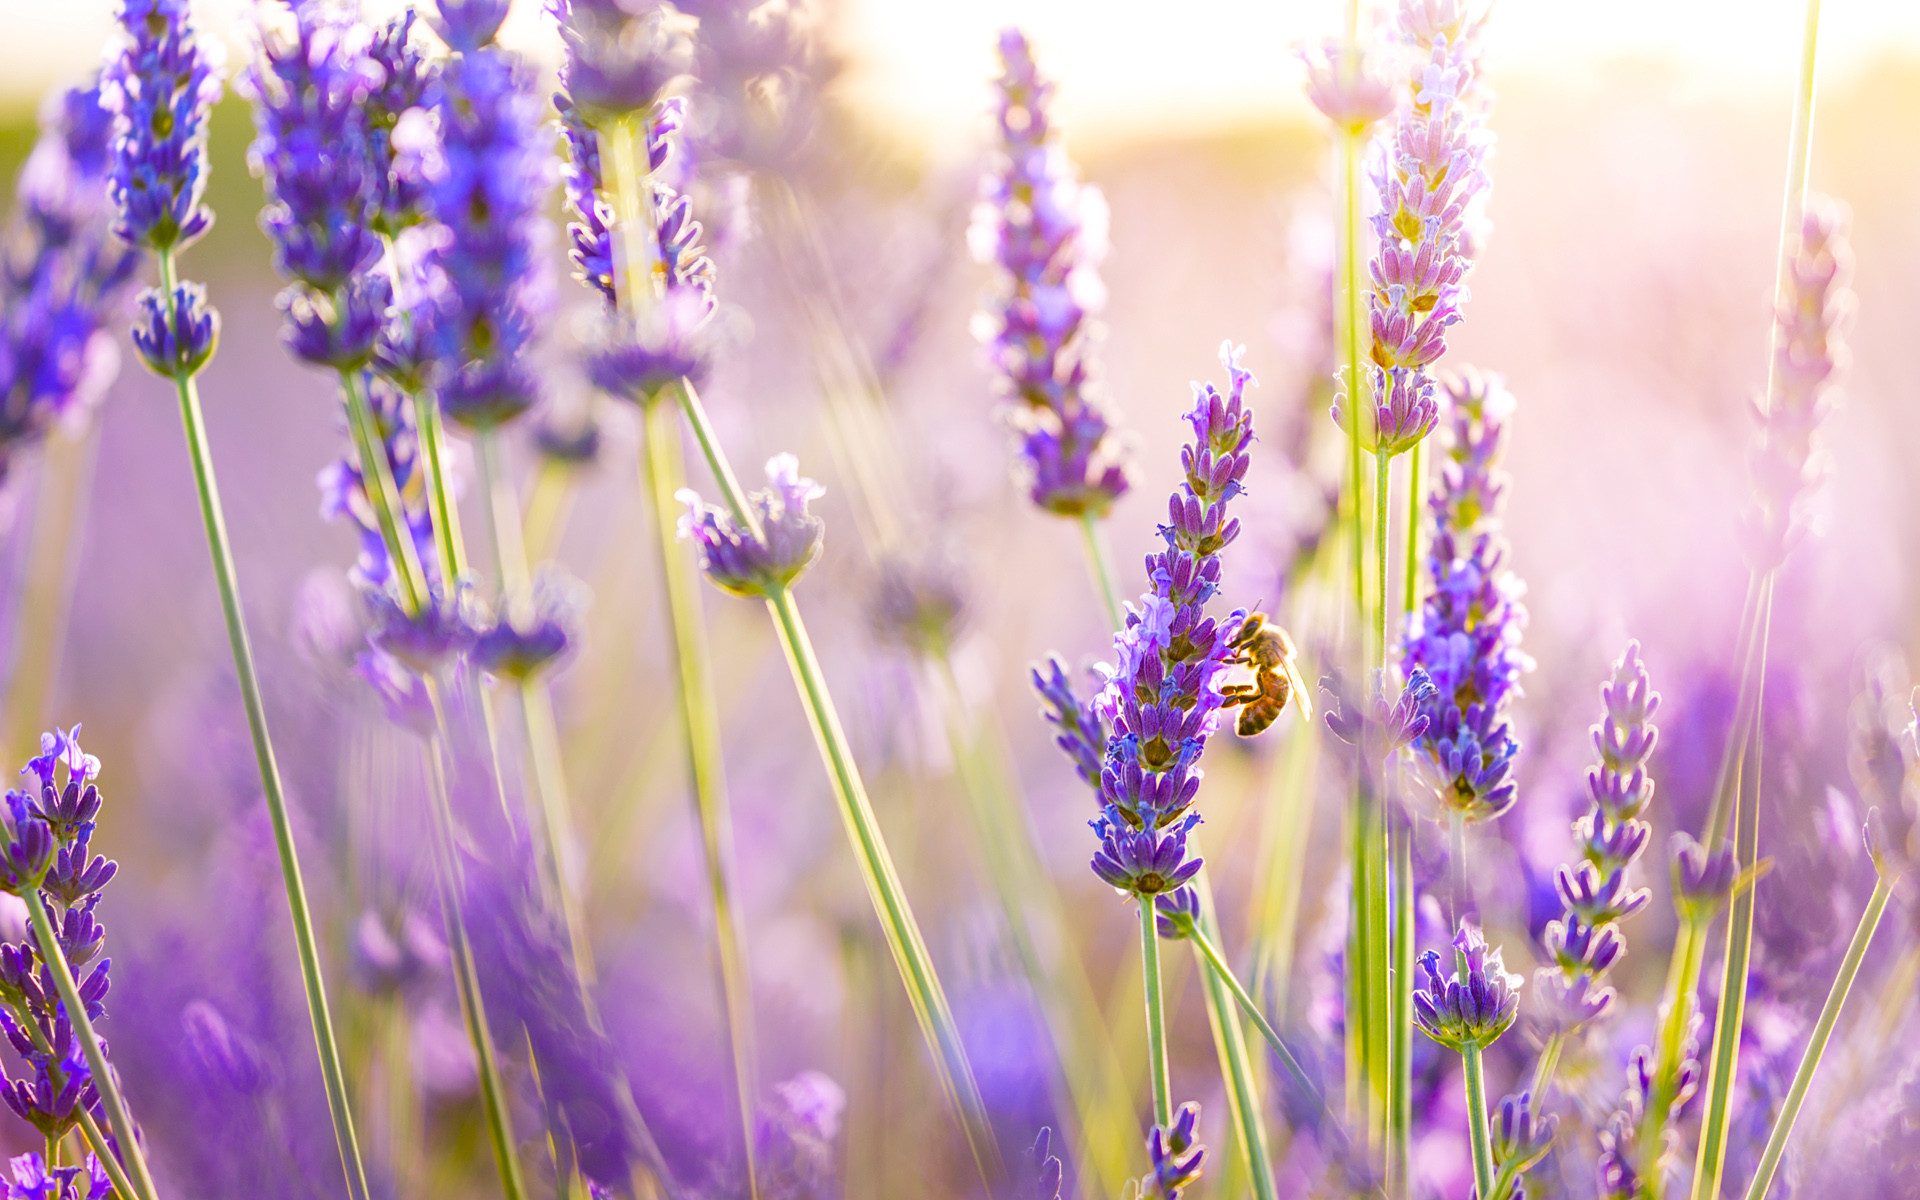 Bạn đang cần tìm một hình nền hoa oải hương đẹp mắt cho điện thoại của mình? Hãy tìm kiếm hình nền hoa lavender để tìm được những bức ảnh đẹp nhất và tạo cho mình một diện mạo mới và đầy nghệ thuật.